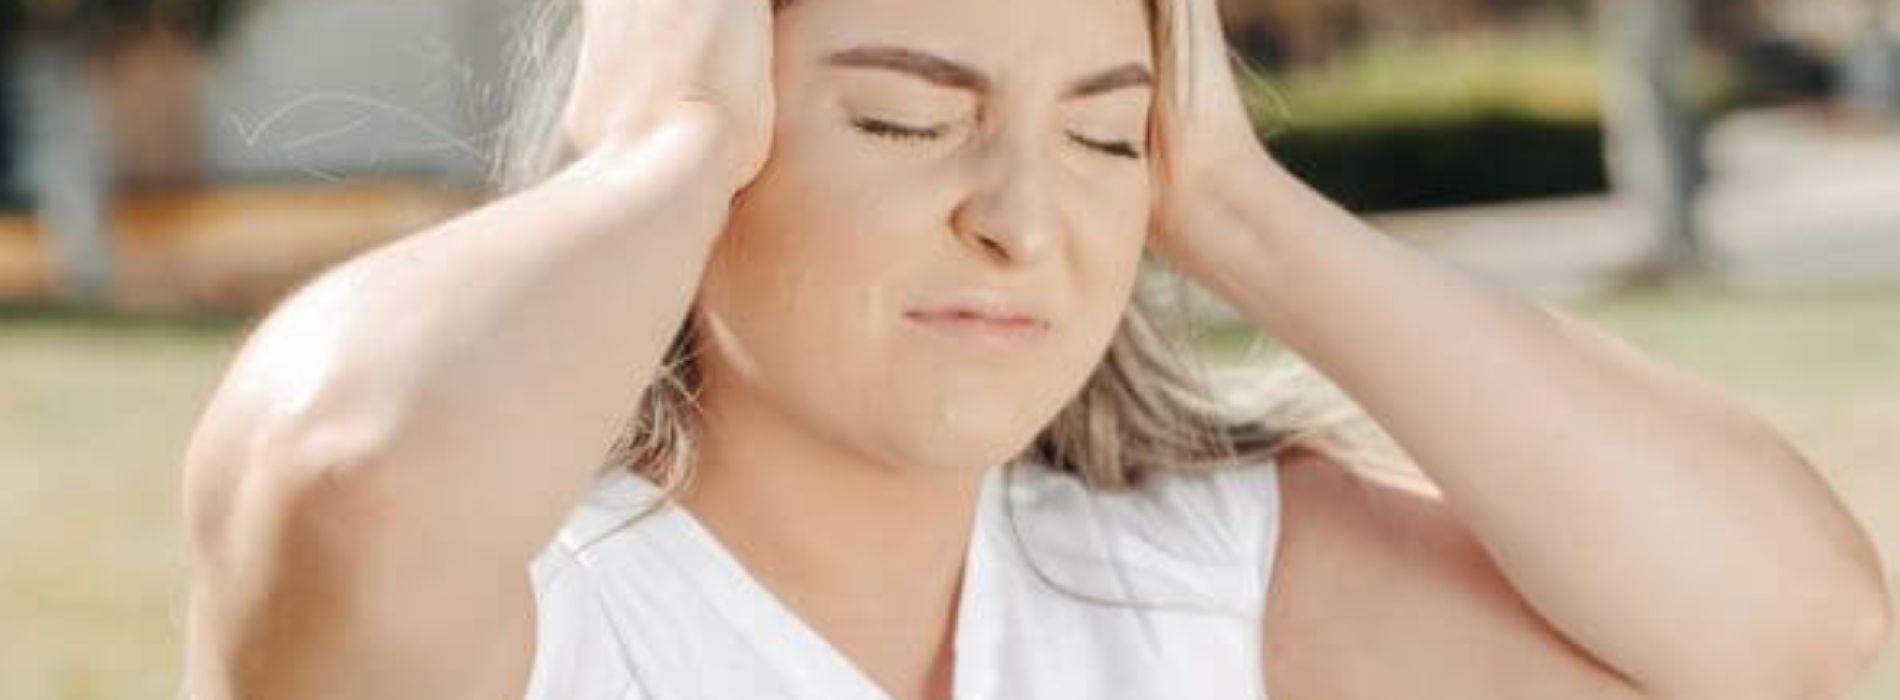 5 natuurlijke remedies tegen migraine om slopende hoofdpijn te bestrijden, volgens gezondheidsexperts